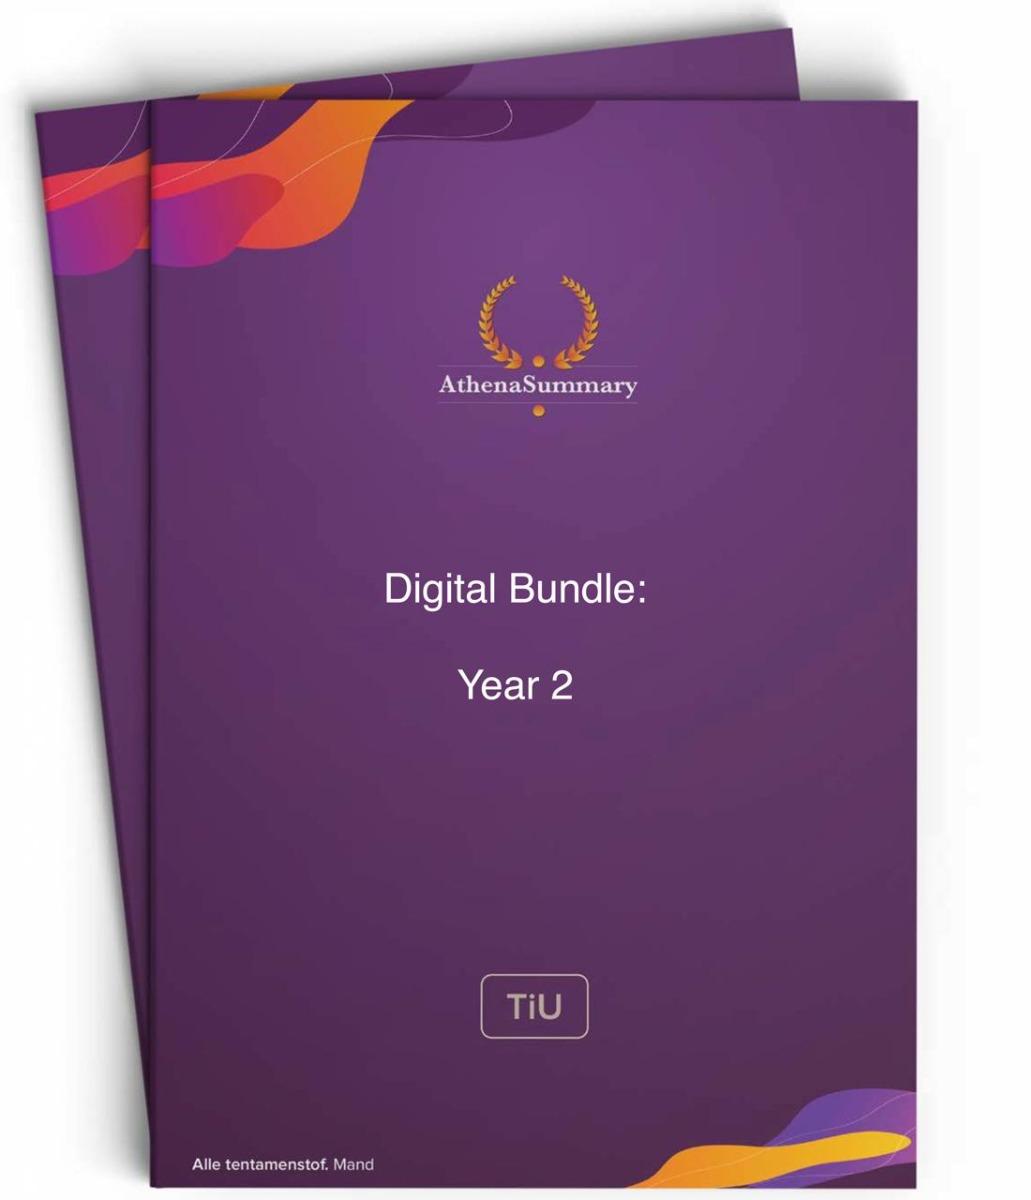 Digital Bundle: Year 2